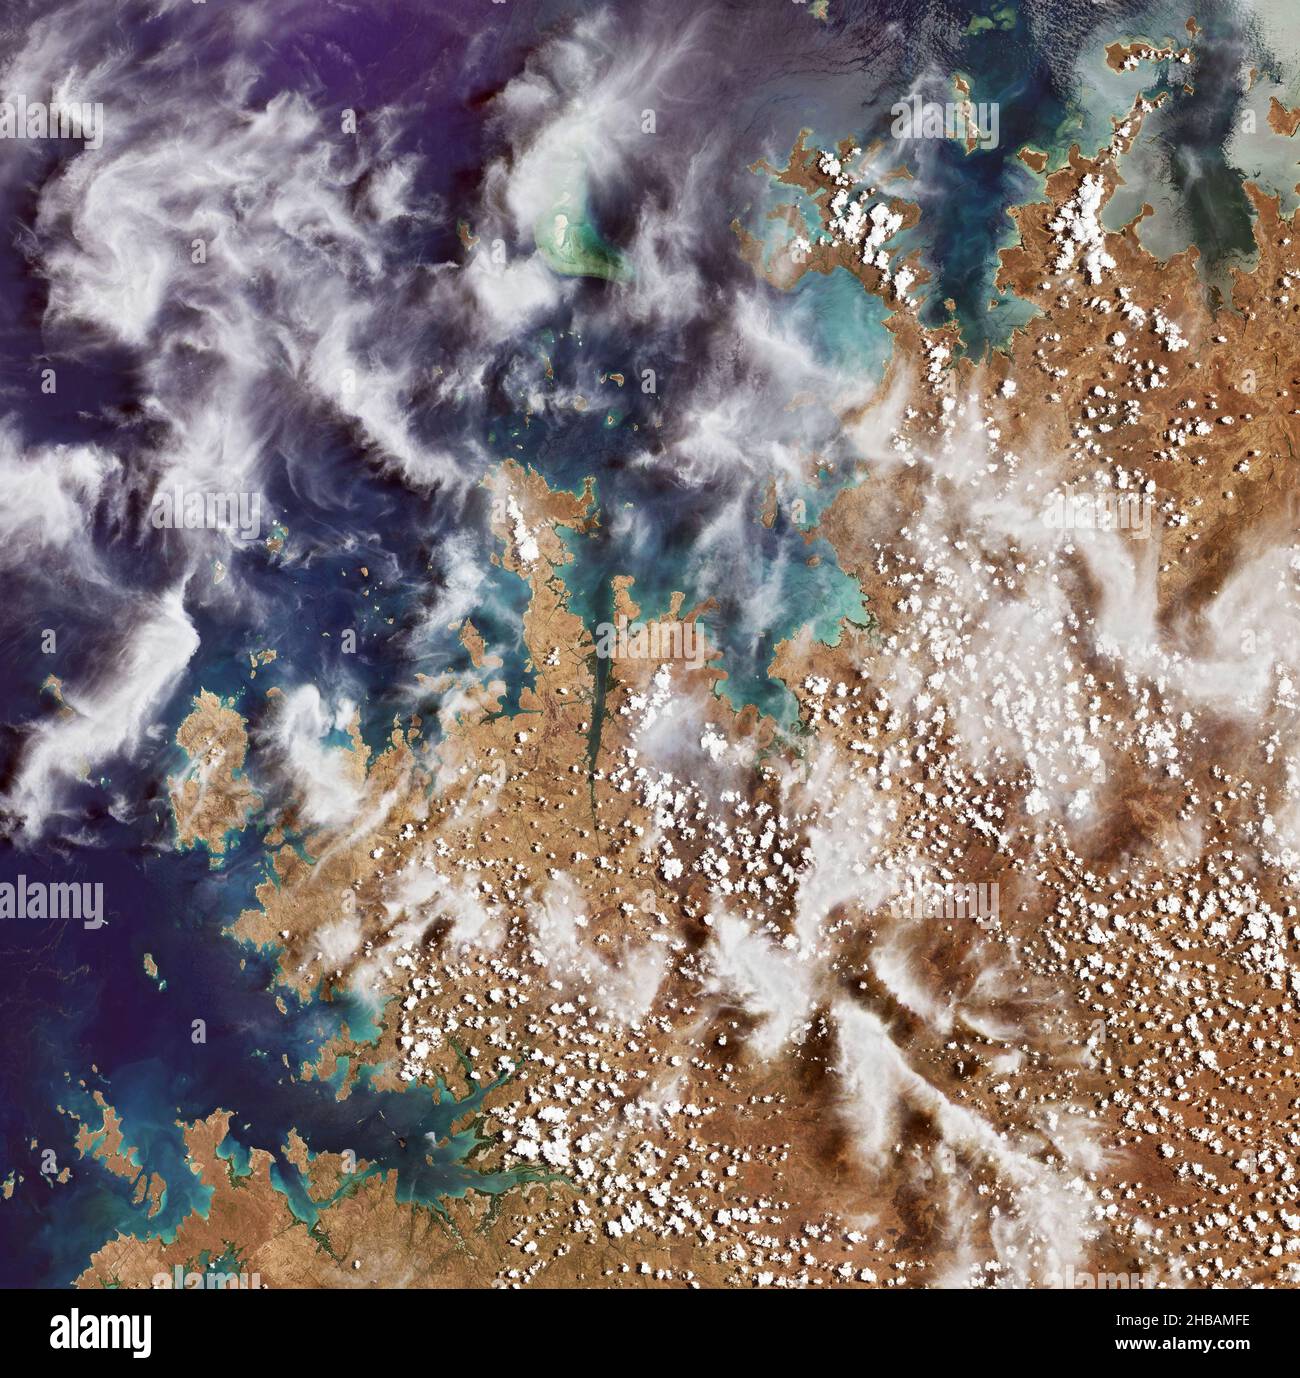 La forêt d'eucalyptus de NW Australia est vue dans cette image Landsat 9 prise le 31 octobre 2021 par Landsat 9.Les bois sont sujets aux feux de brousse pendant la saison sèche et cette image montre un feu continu et plusieurs cicatrices de brûlure qui semblent brun rougeâtre.Landsat 9 aidera les scientifiques à comprendre le rôle que joue le changement climatique dans les feux de brousse actuels et futurs ainsi que dans le rétablissement de la végétation.Grâce à Landsat, les scientifiques et les gestionnaires fonciers peuvent considérer les changements qui se produisent à la surface de notre planète à l'échelle du paysage. Banque D'Images